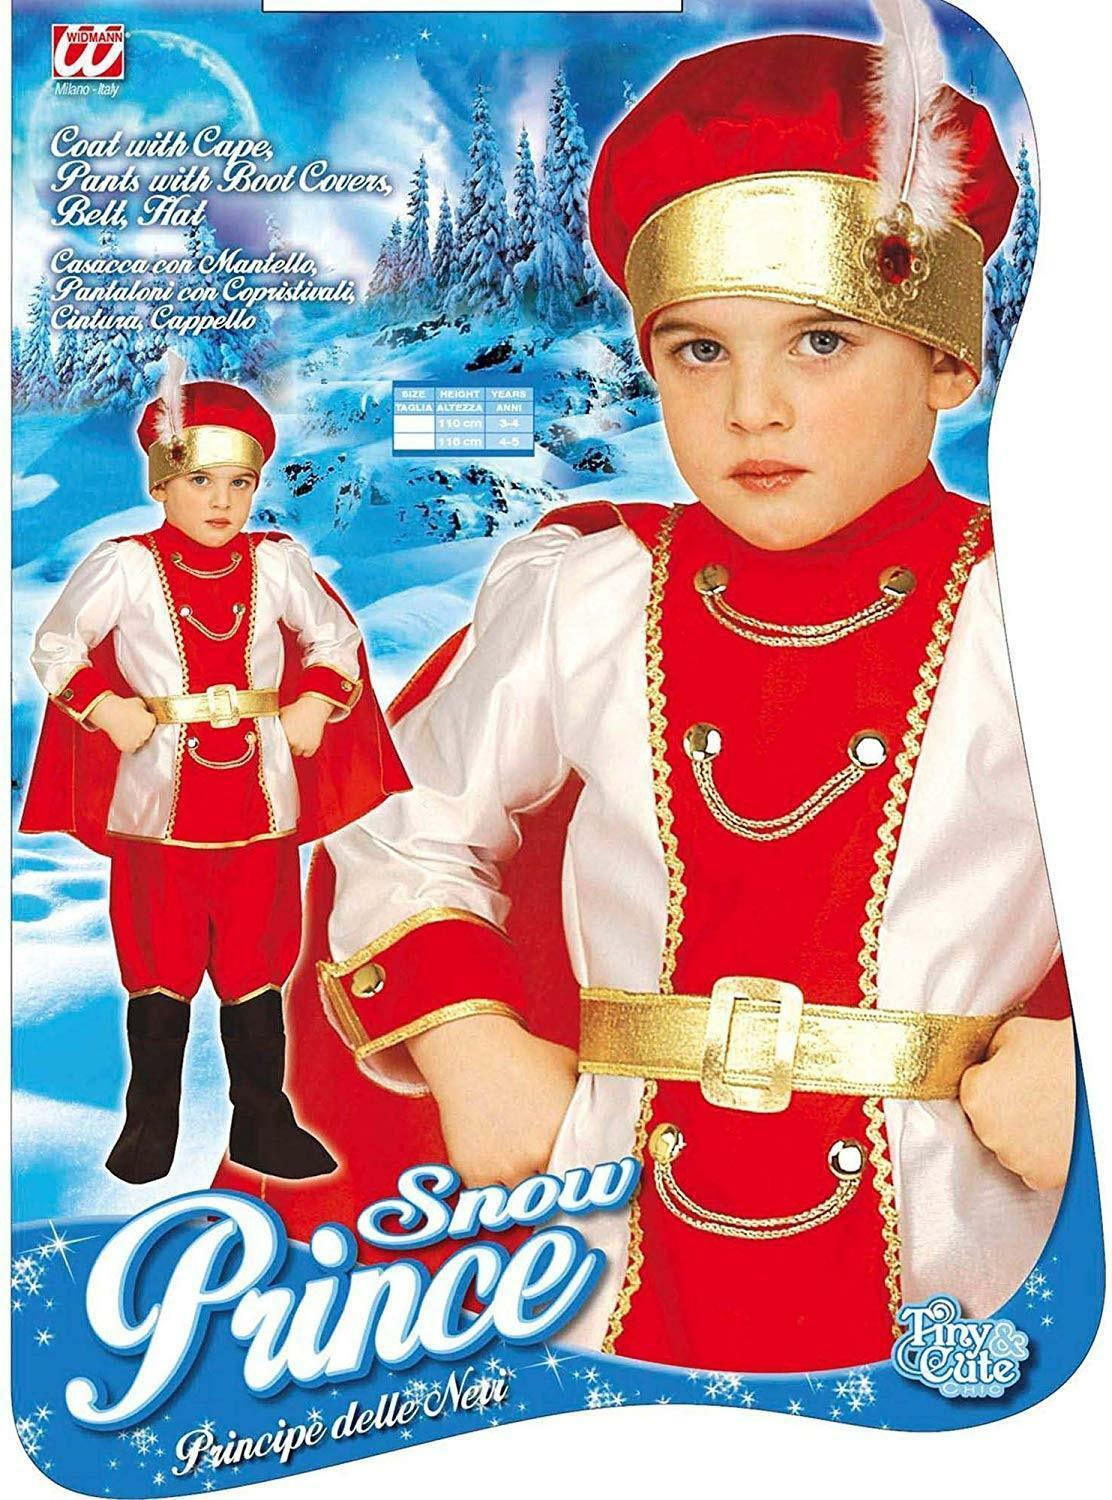 widmann costume principe delle nevi taglia 3/4 anni